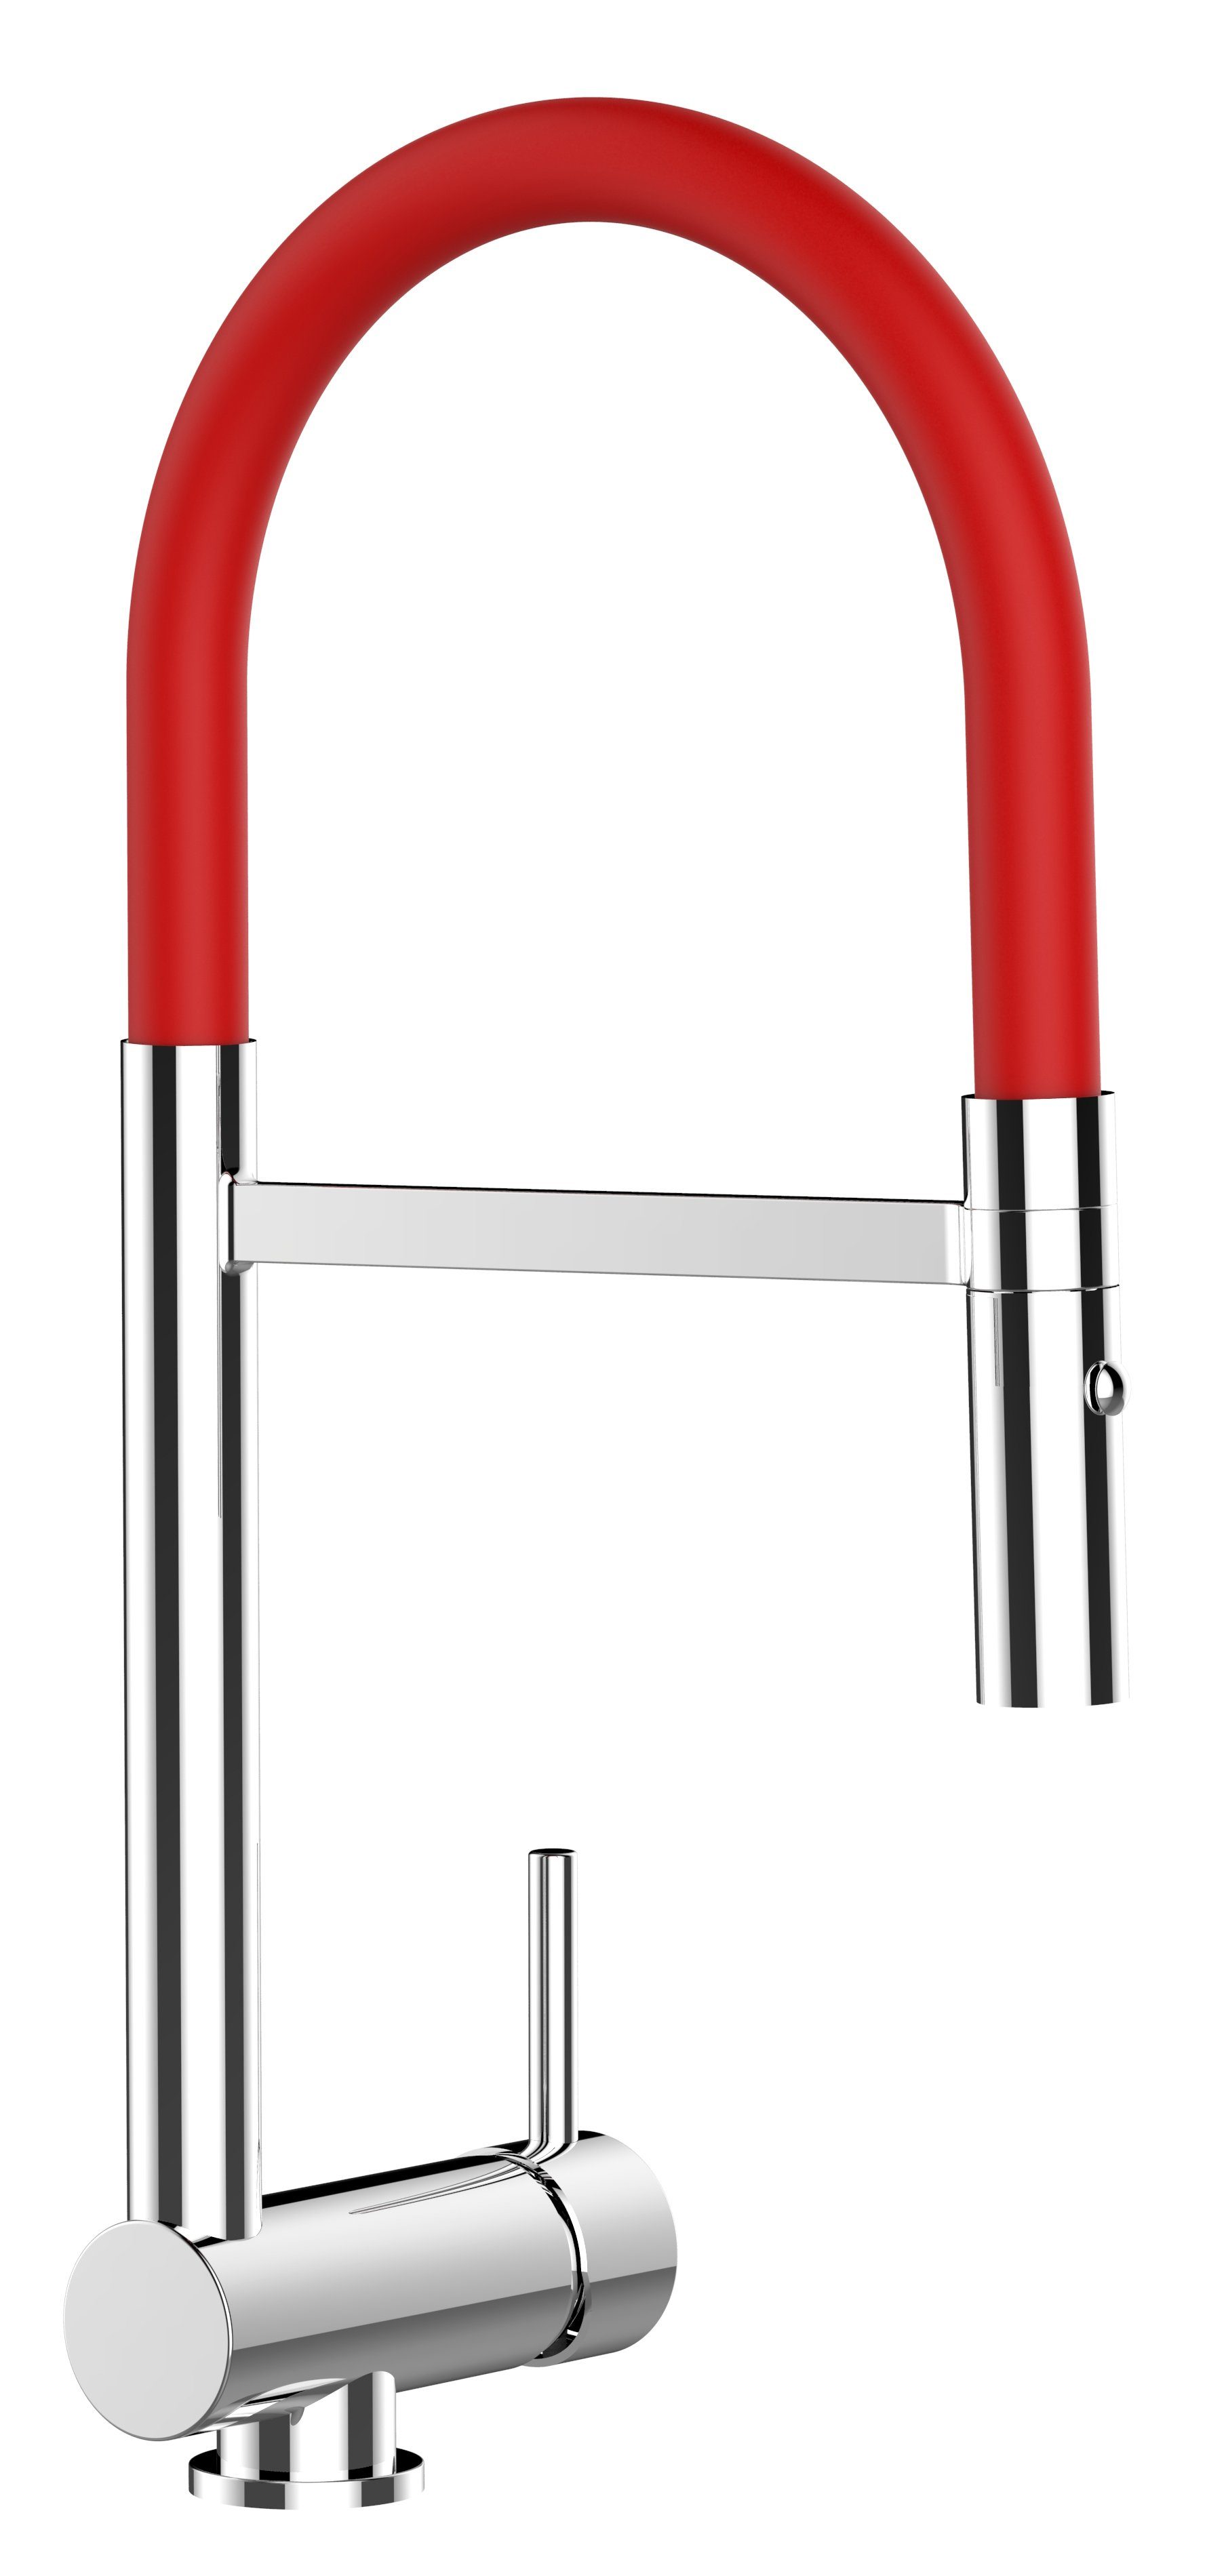 VIZIO Küchenarmatur Unterfenster Armatur 6 cm mit abnehmbarer 2 strahl Brause Hochdruck, Messing verchromt, abgeschwenkt nur 60mm hoch, Sicherungstaste gegen unbeabsichtigtes Abkippen Rot